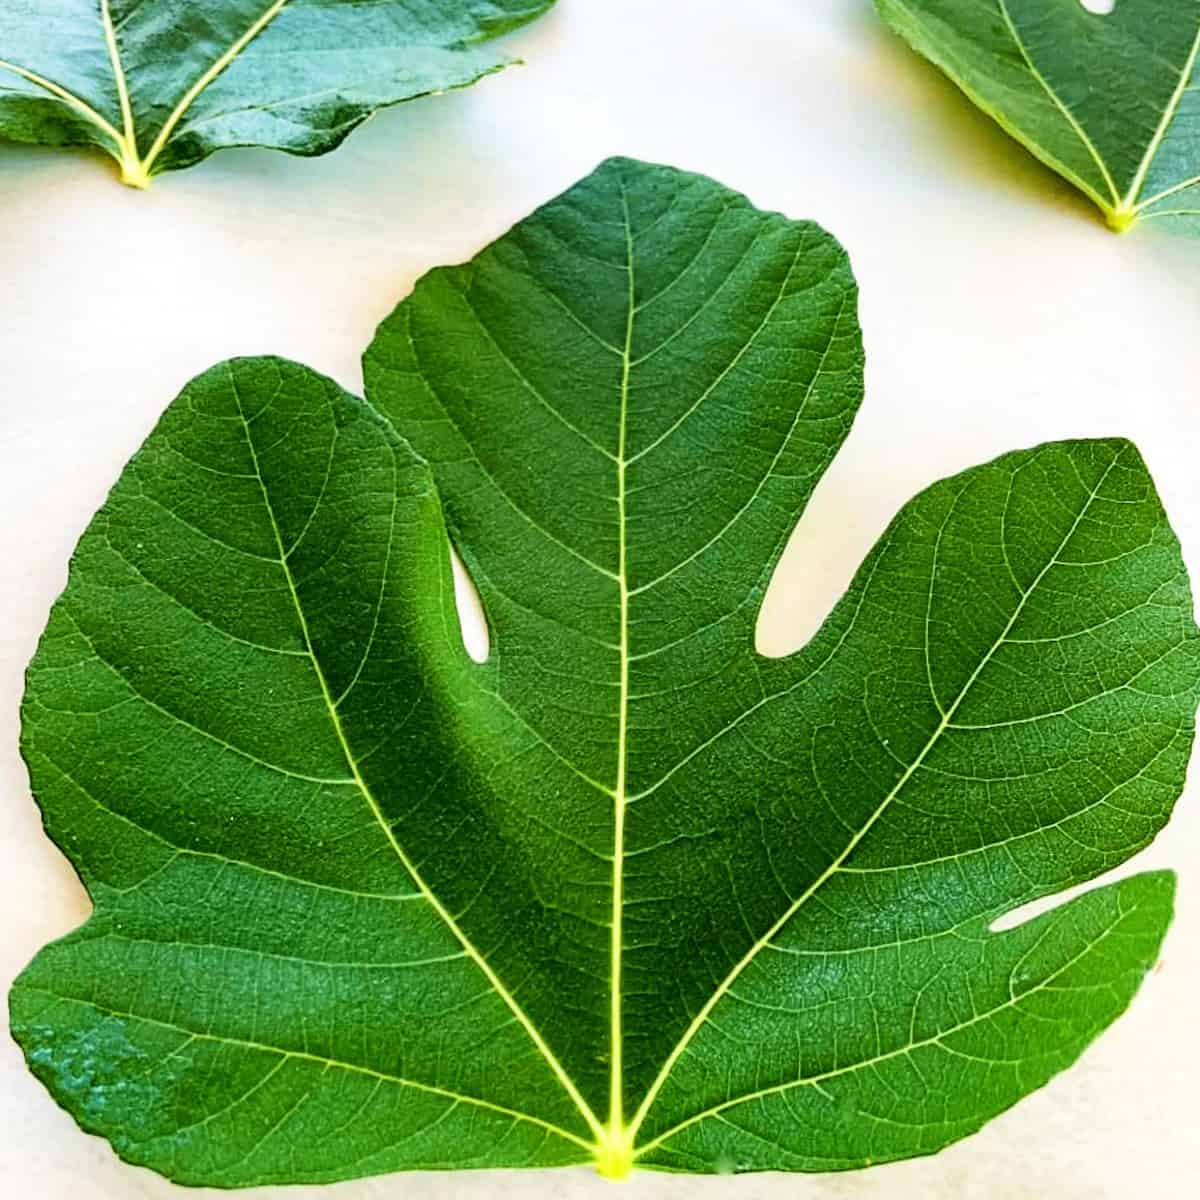 fresh fig leaf on a table